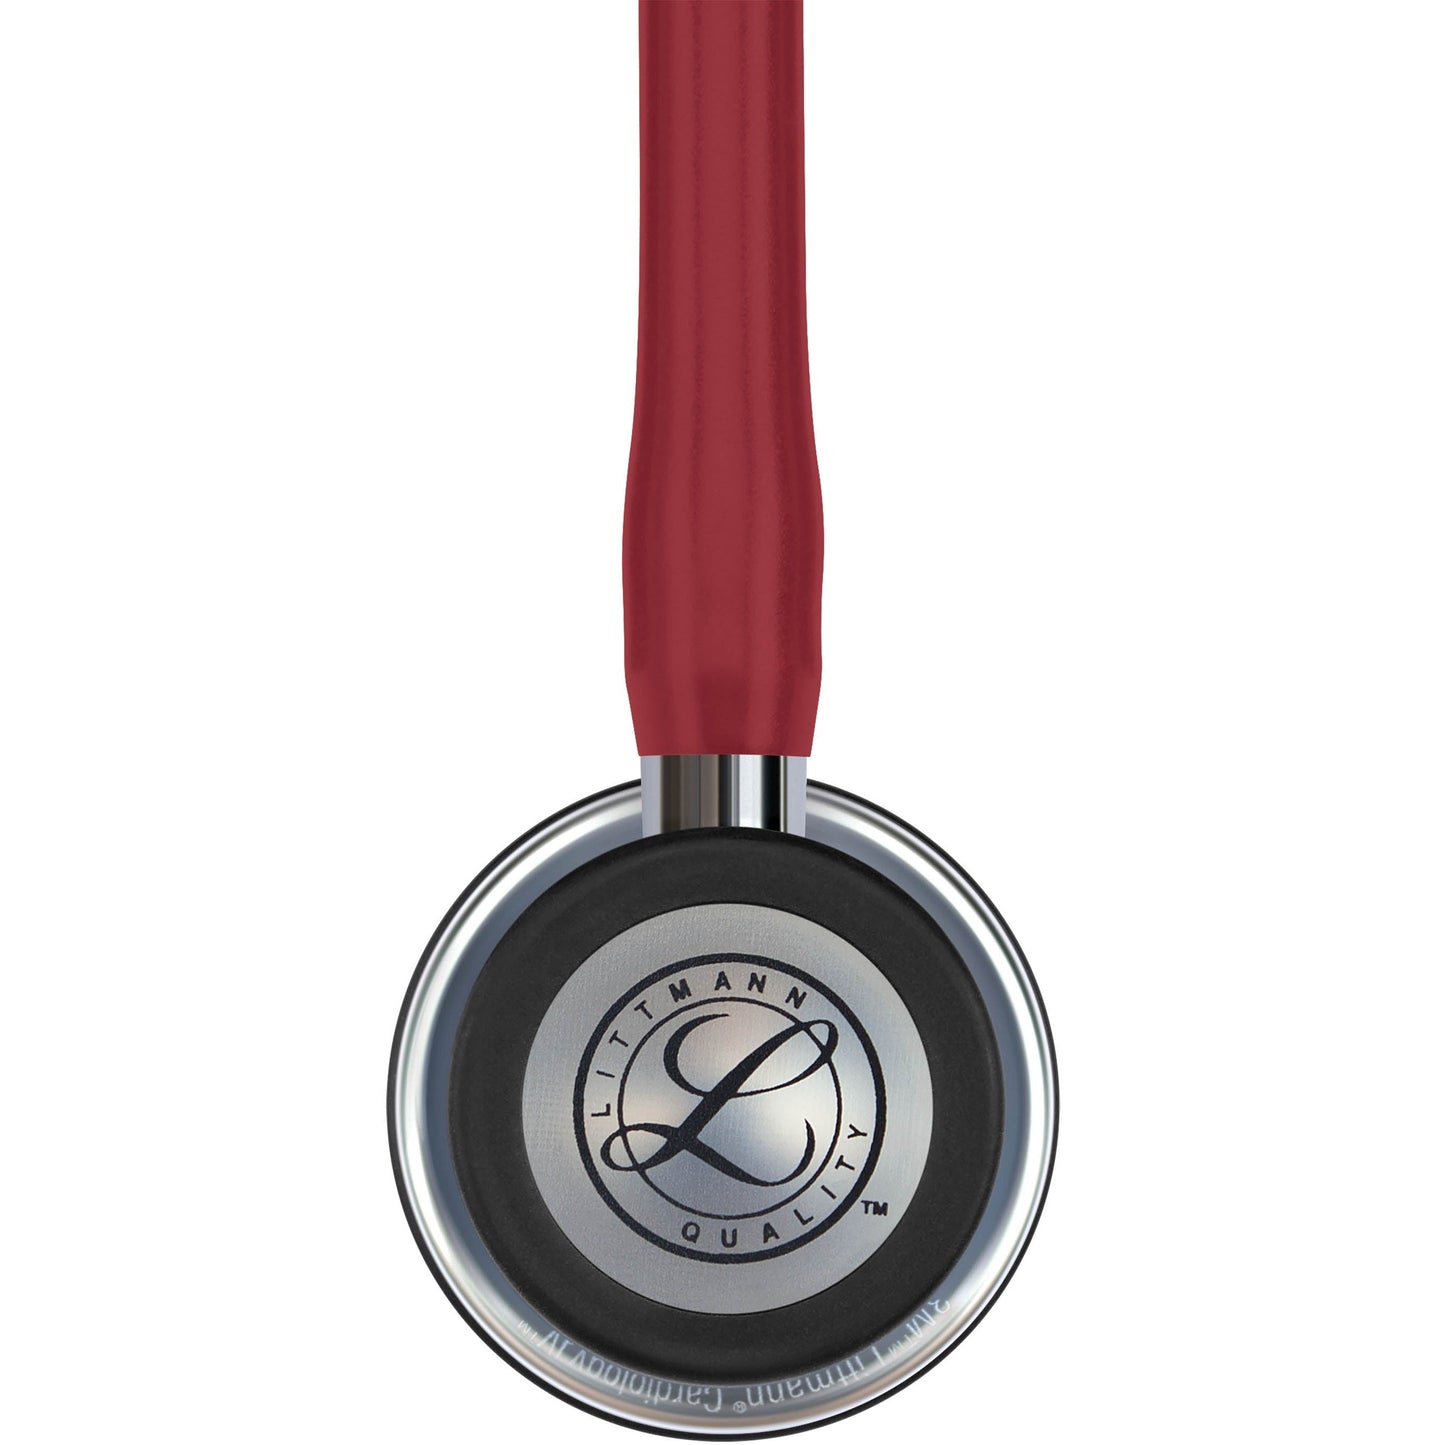 Stetoskop 3M™ Littmann® Cardiology IV™ Diagnostic, membranski nastavek in koren visoki sijaj, bordo rdeča cev, slušalke iz nerjavnega jekla, 68,5 cm, 6170